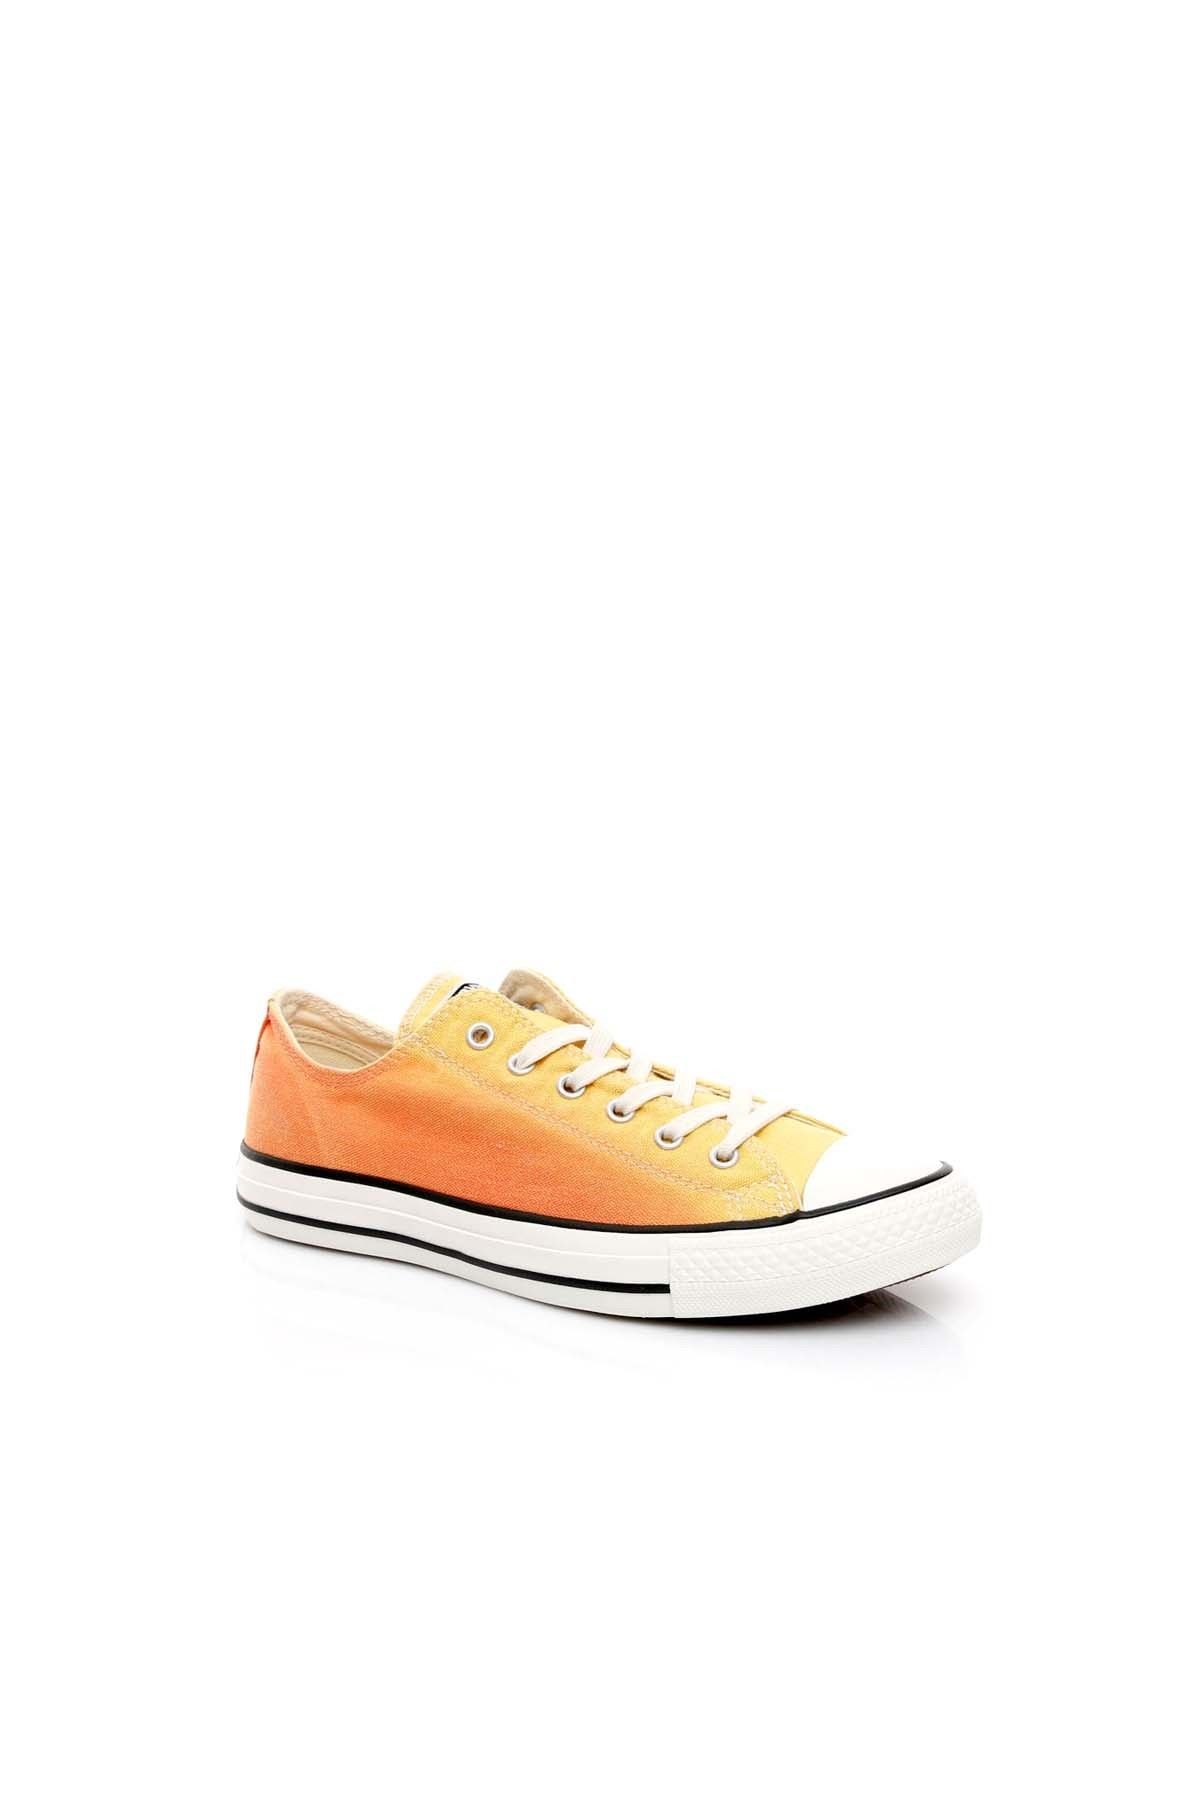 Converse Kadın Sarı Sneaker 151268C